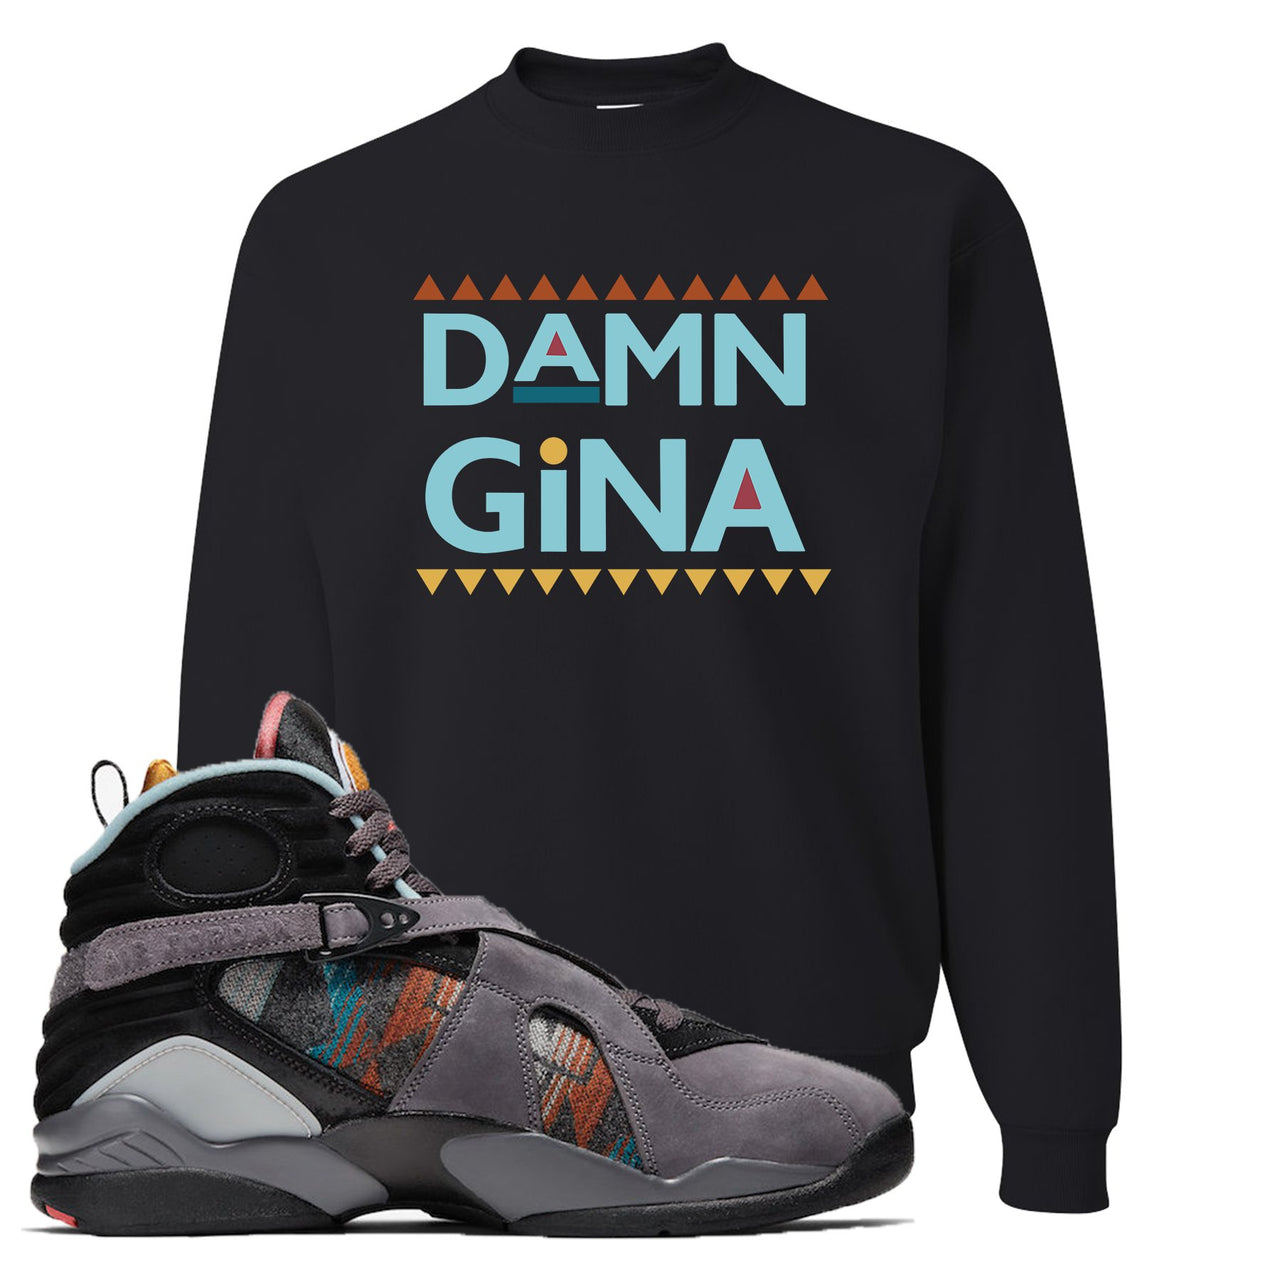 Jordan 8 N7 Pendleton Damn Gina Black Sneaker Hook Up Crewneck Sweatshirt